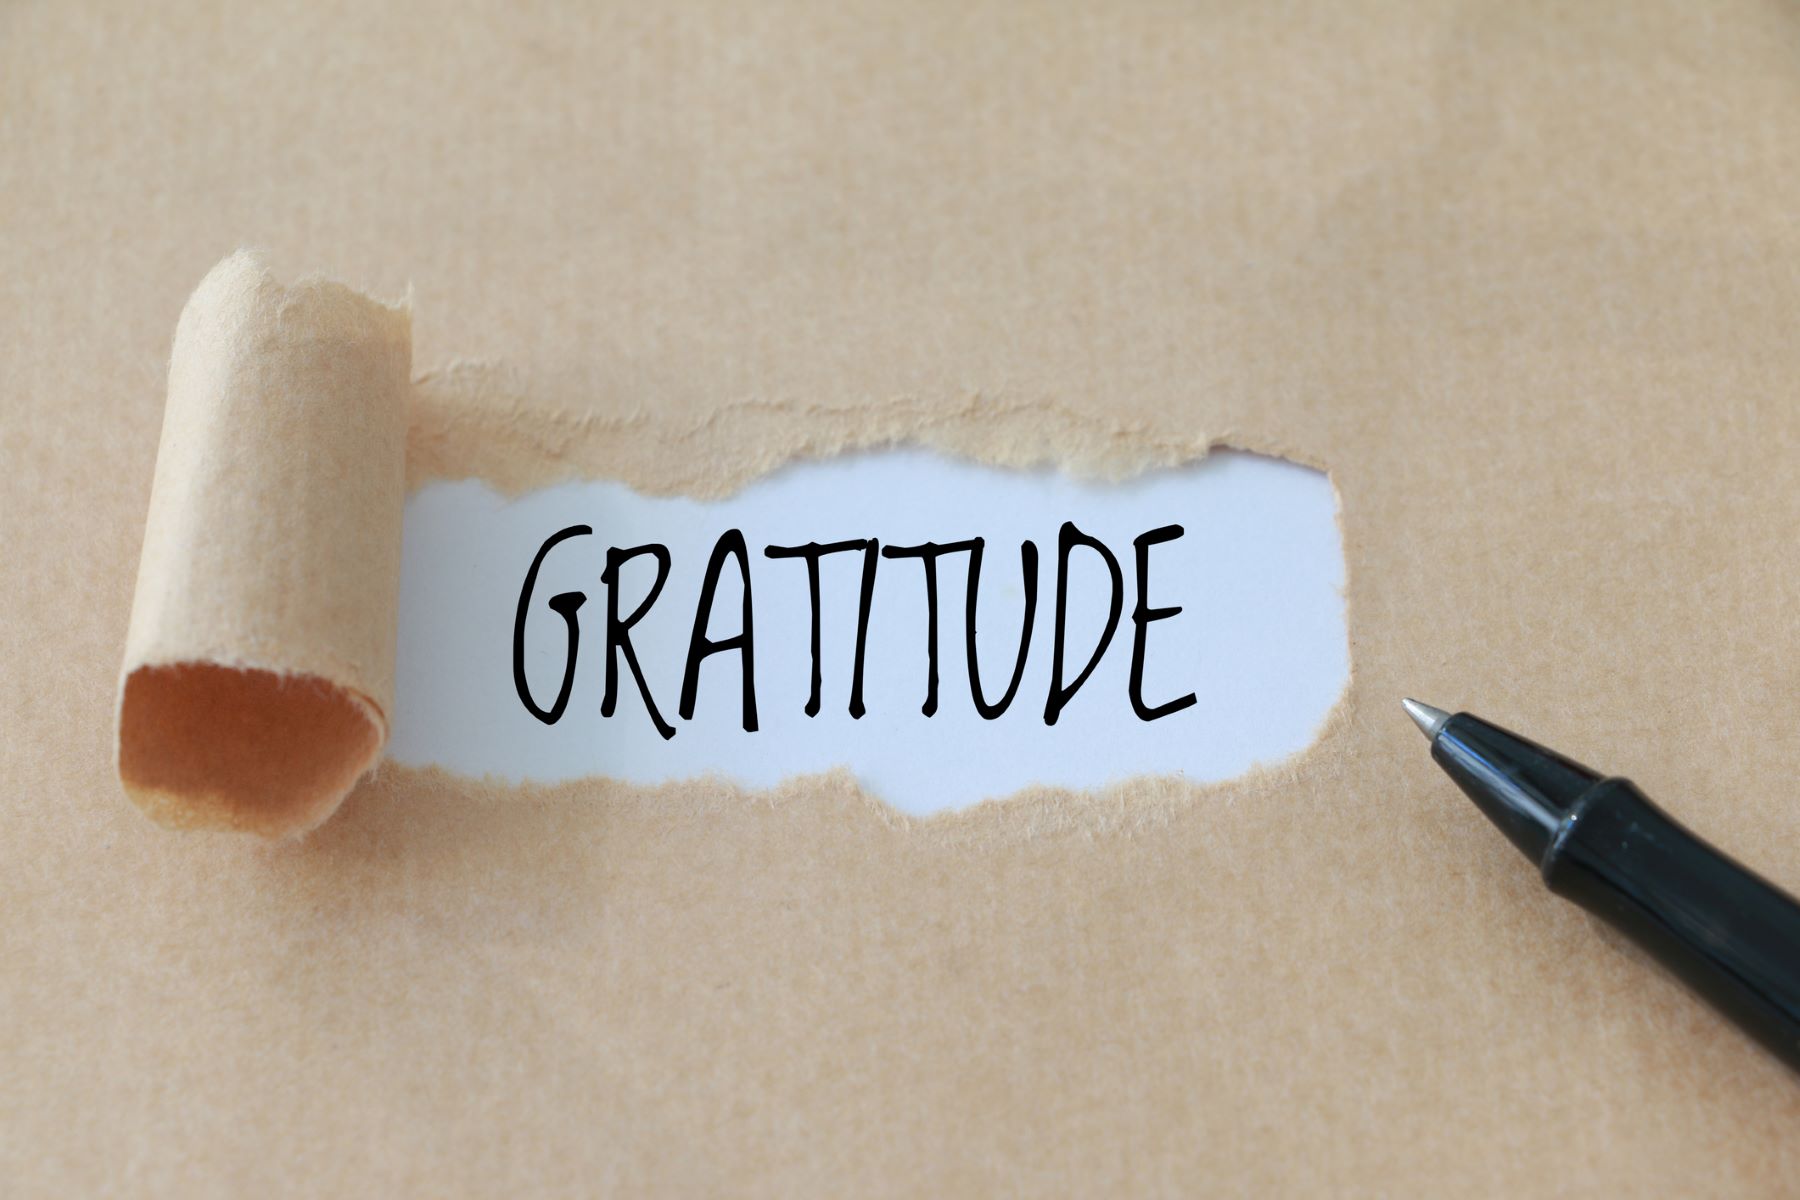 10 Amazing Ways To Express Gratitude